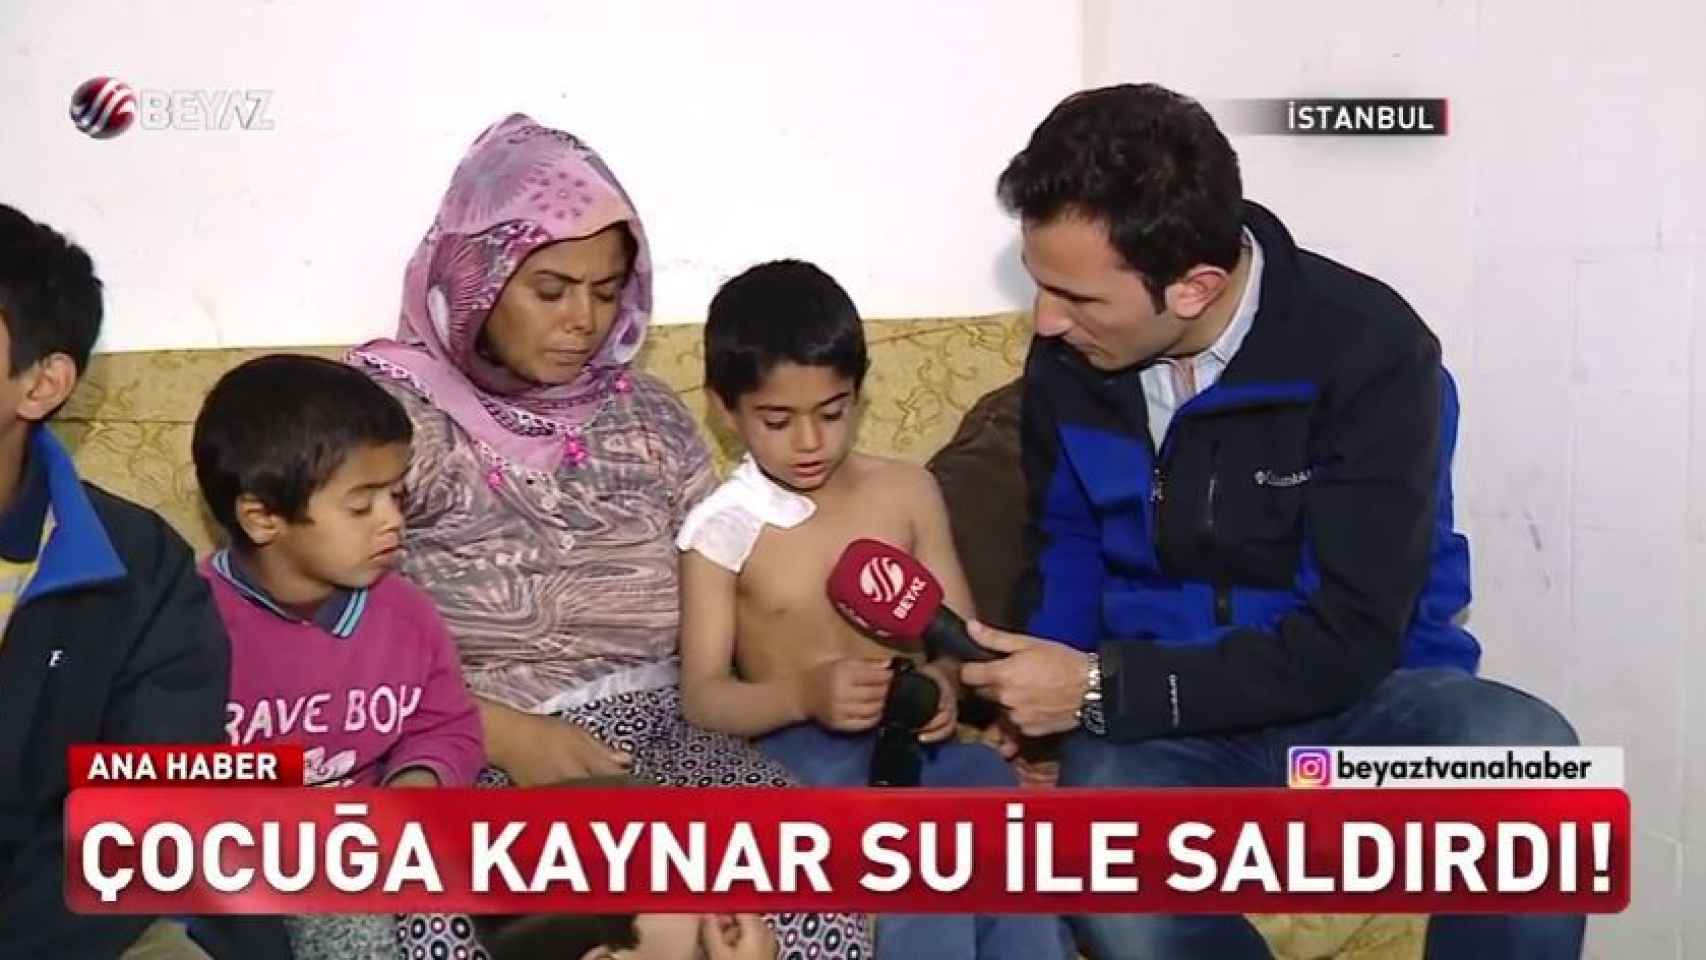 Polat y su familia, entrevistados por una TV turca.